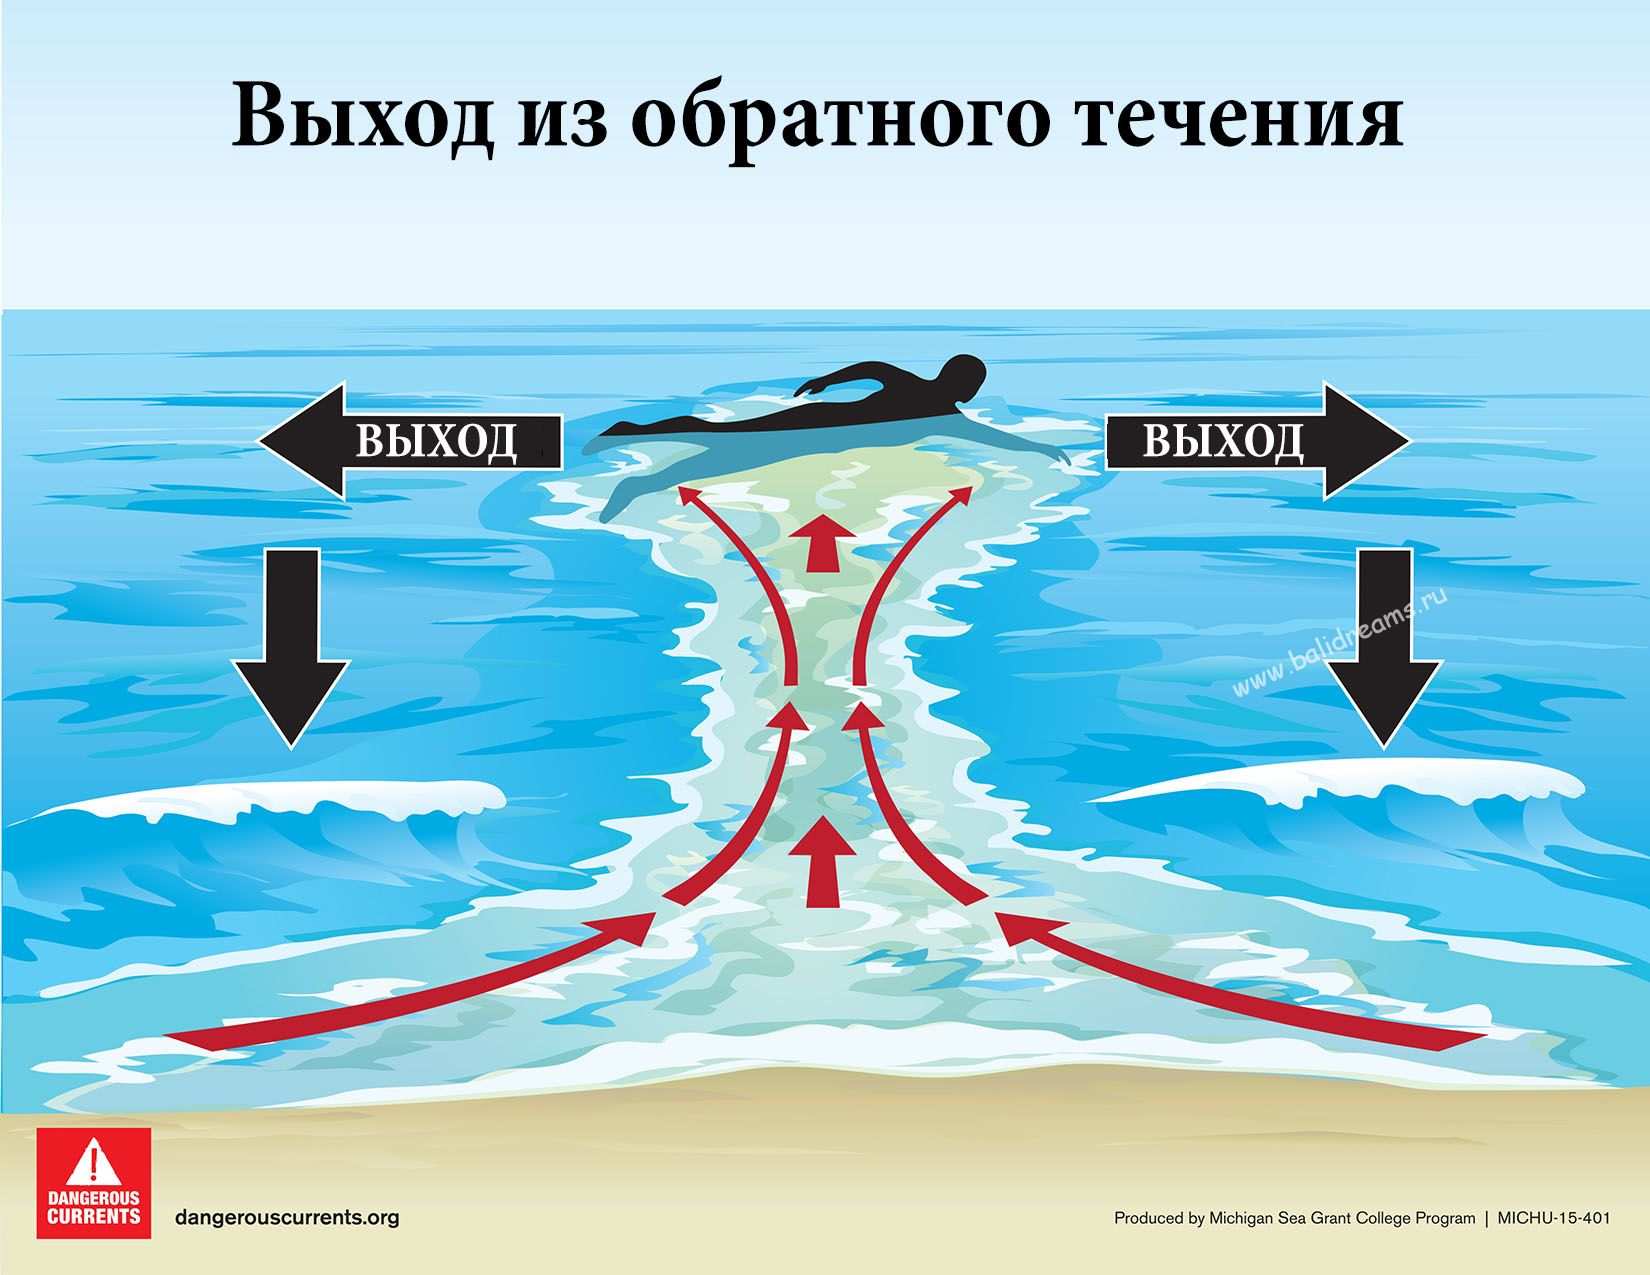 Безопасный отдых на море: как не утонуть в отбойном течении - safetravels.info - безопасный туризм и отдых